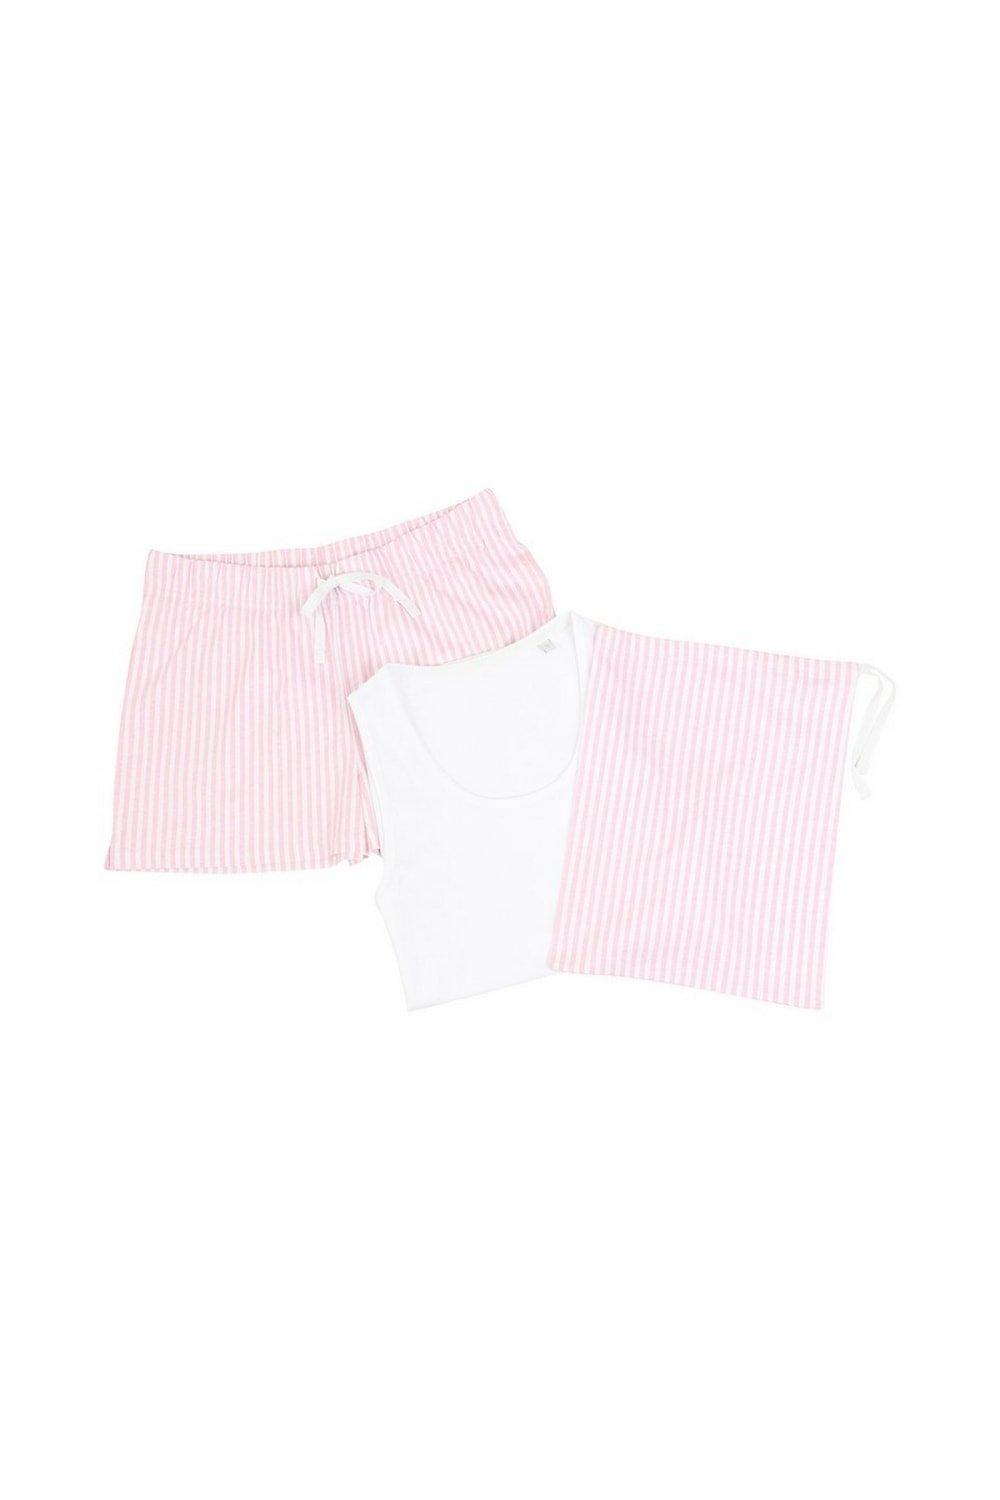 Stripe Short Pyjama Set